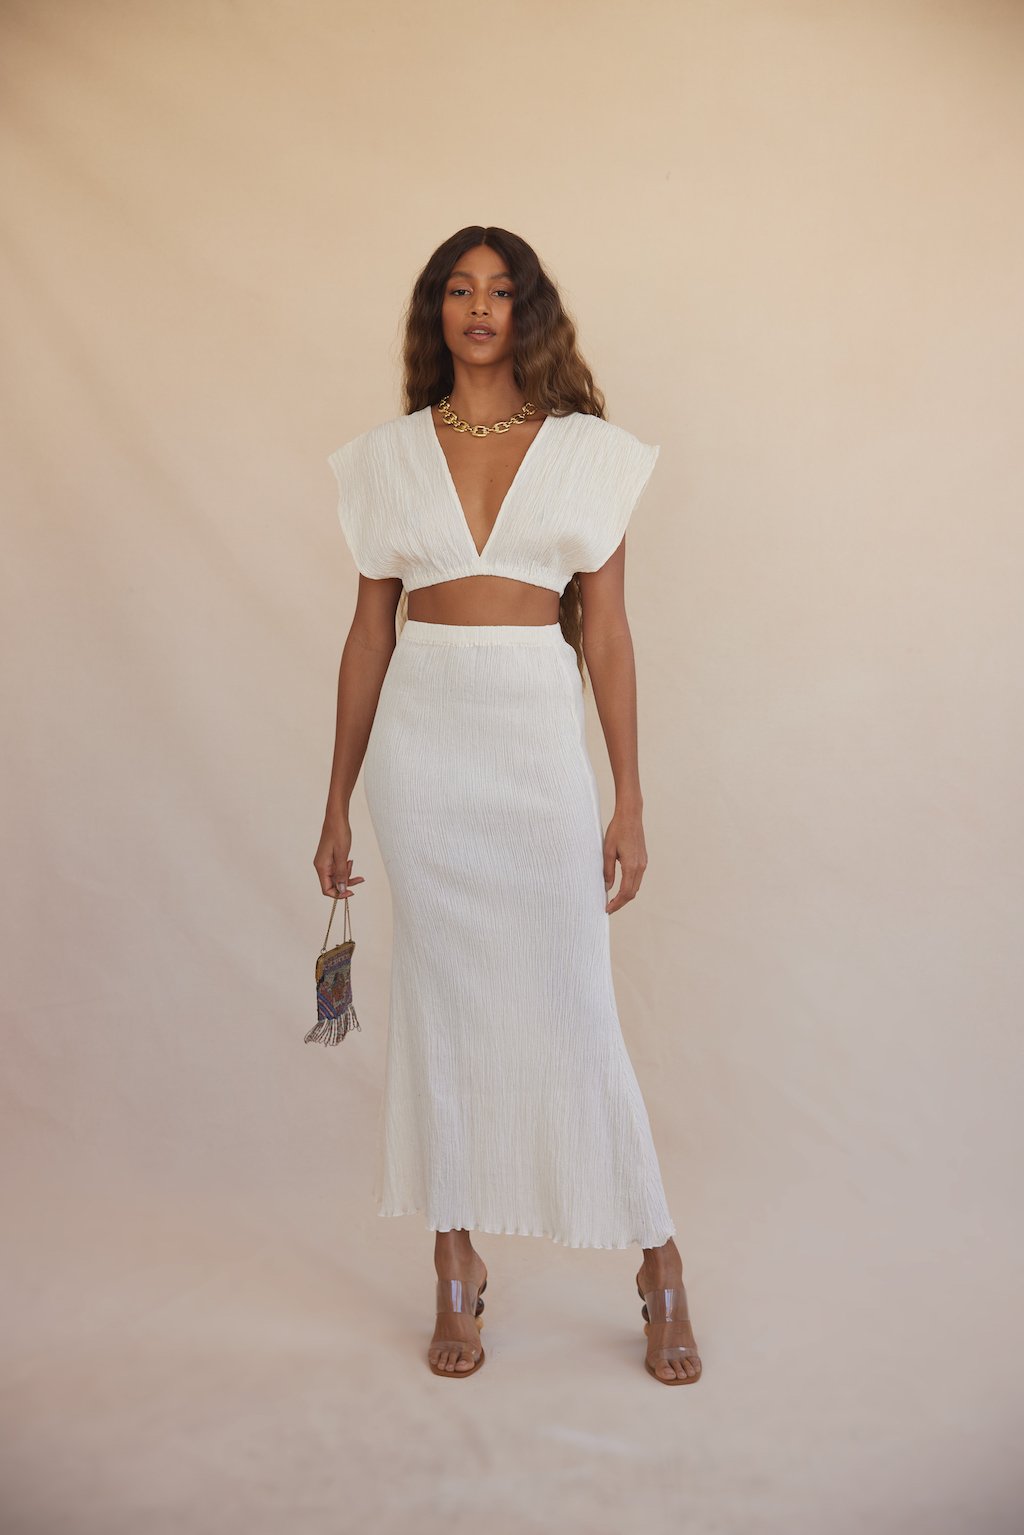 Savannah Morrow Abelia Skirt Resort Wear Designers Perfect For Your Casual Wedding Dress 1 - Những thương hiệu Resort Wear này là ...